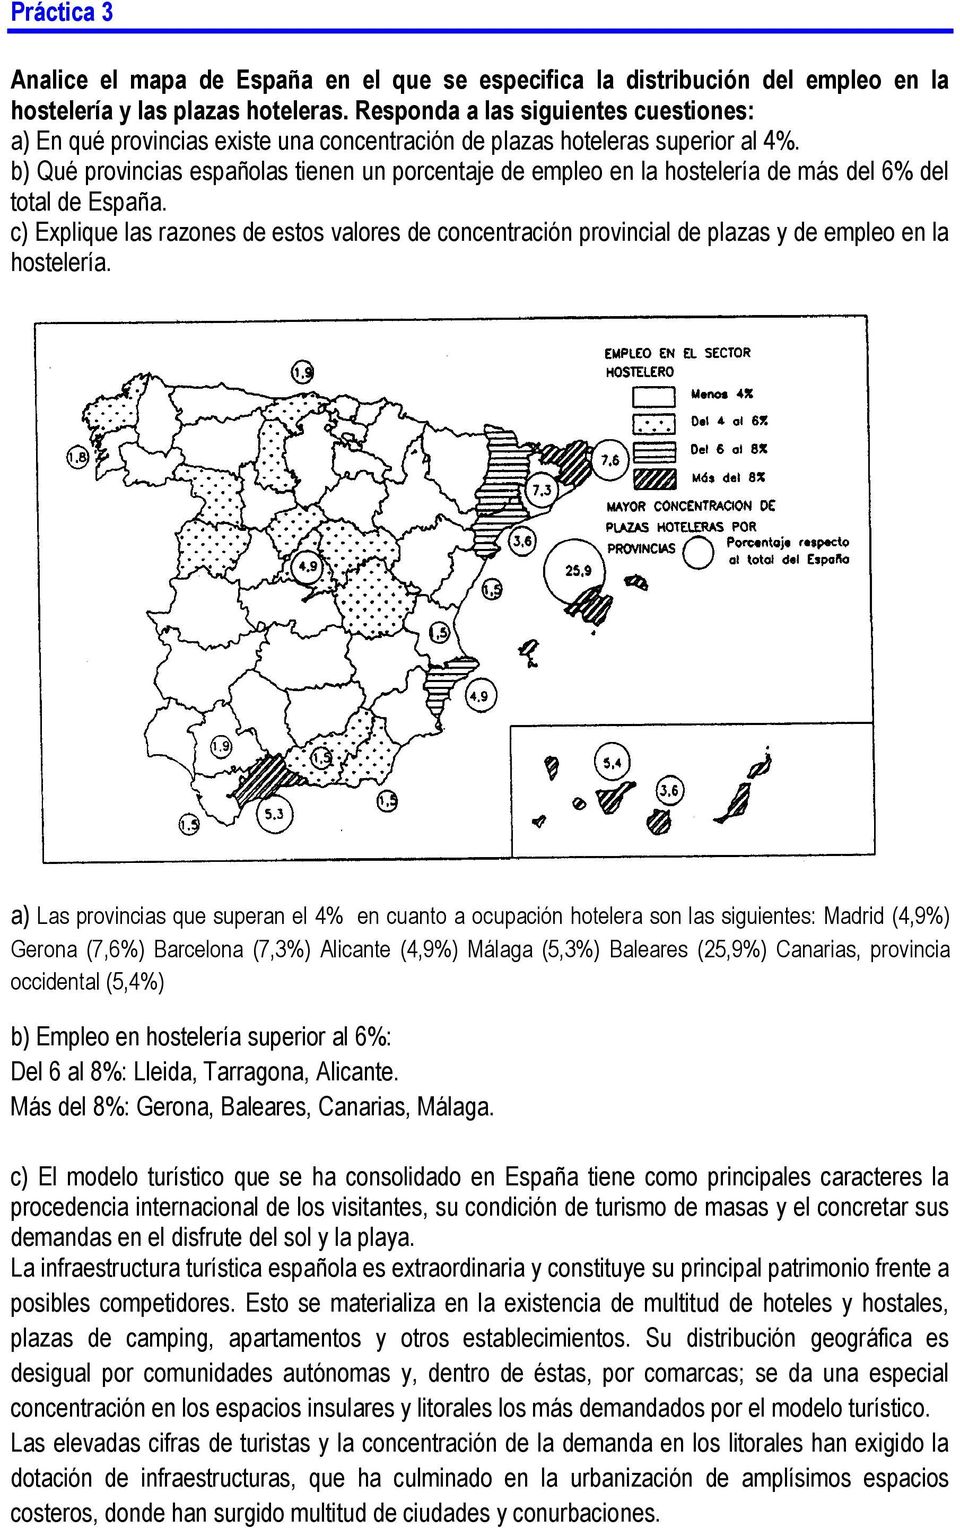 b) Qué provincias españolas tienen un porcentaje de empleo en la hostelería de más del 6% del total de España.